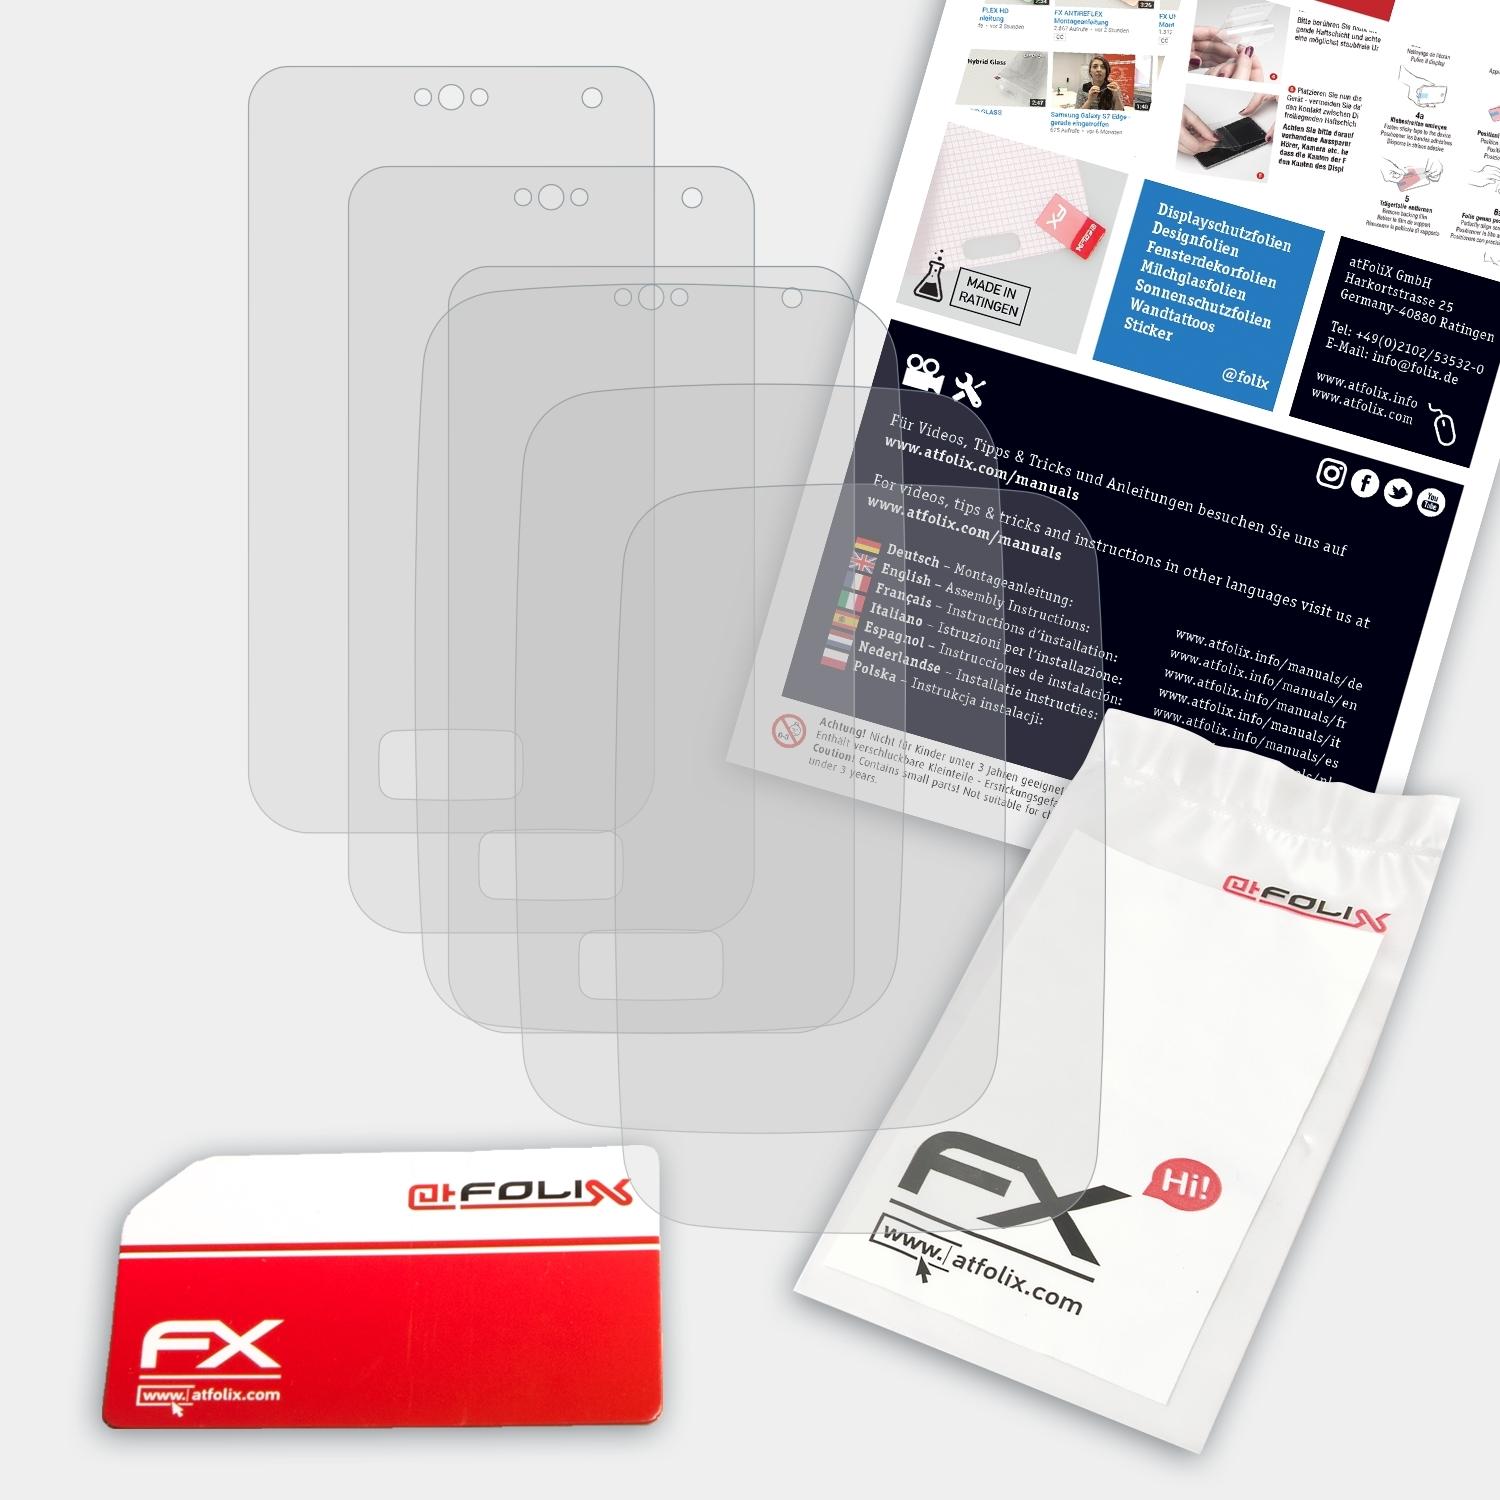 ATFOLIX 3x KX-PRX120) FX-Antireflex Panasonic Displayschutz(für